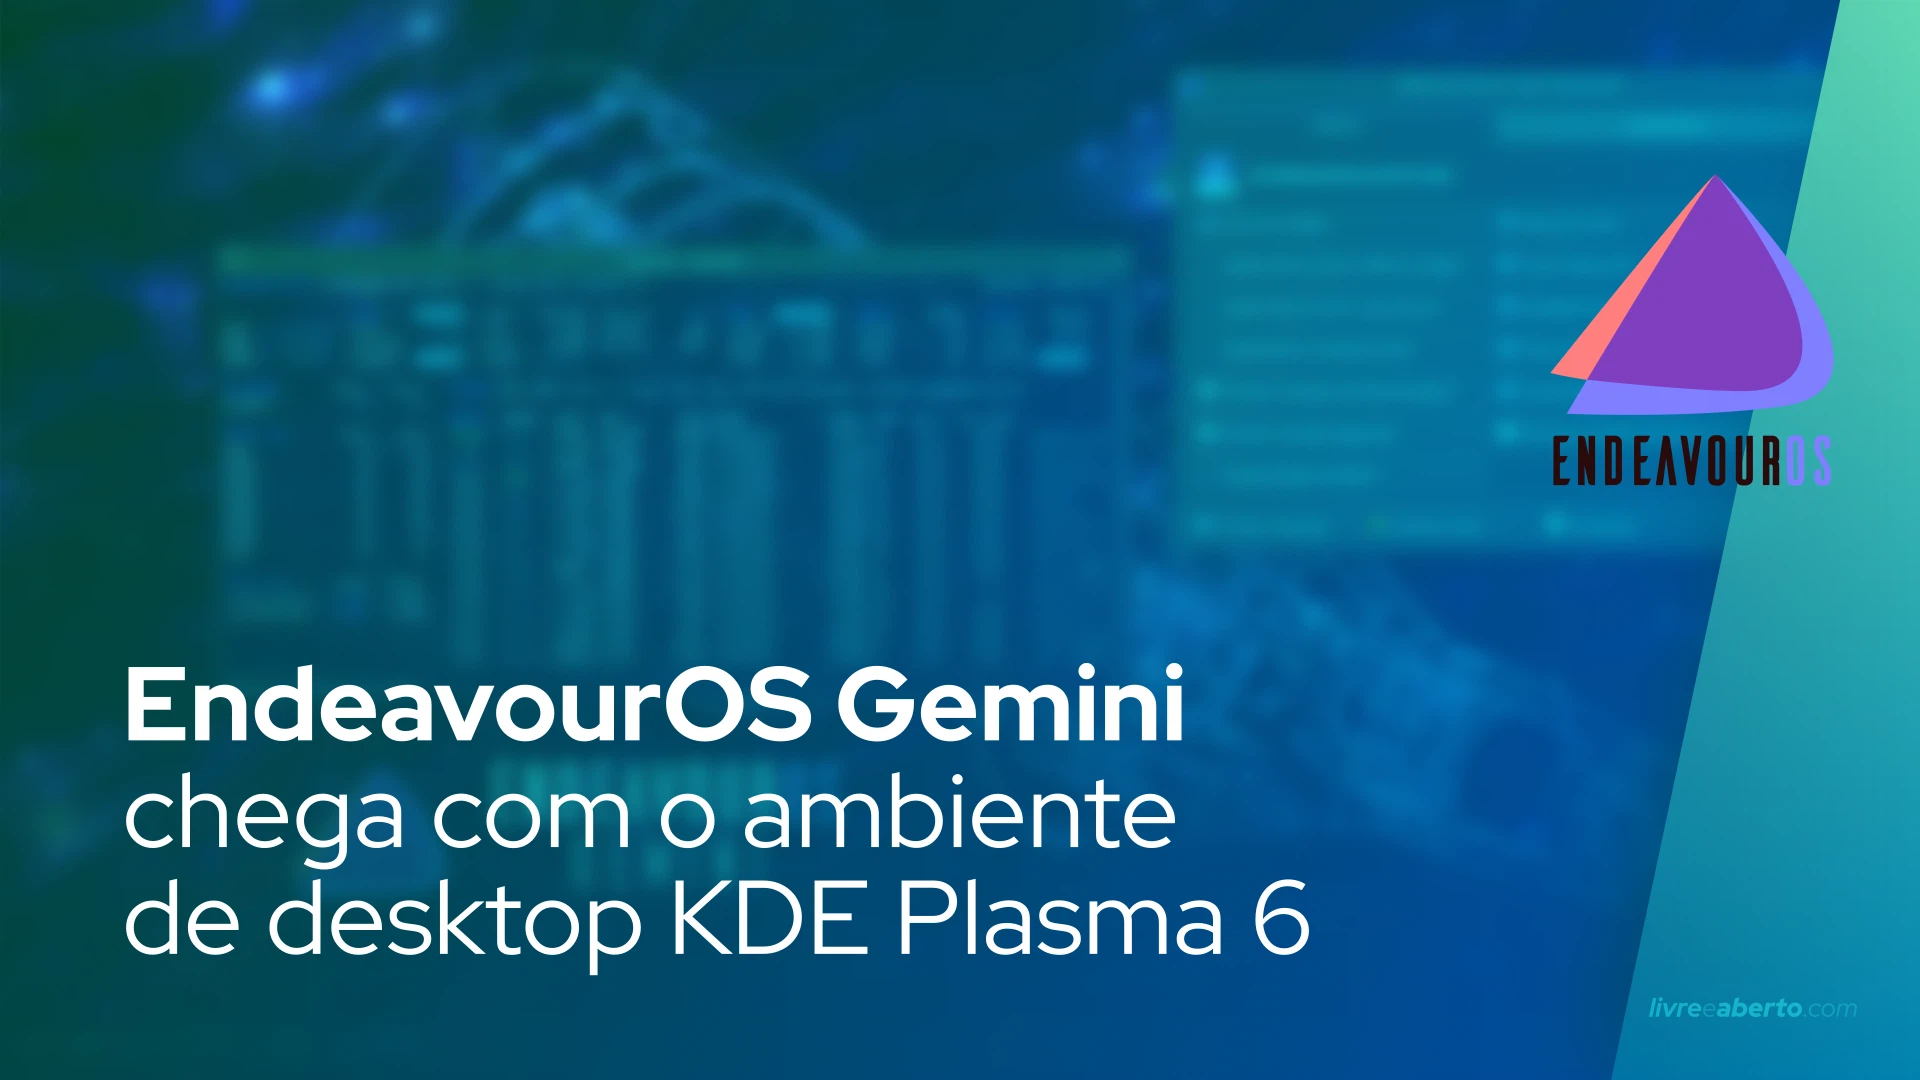 EndeavourOS Gemini chega com o ambiente de desktop KDE Plasma 6